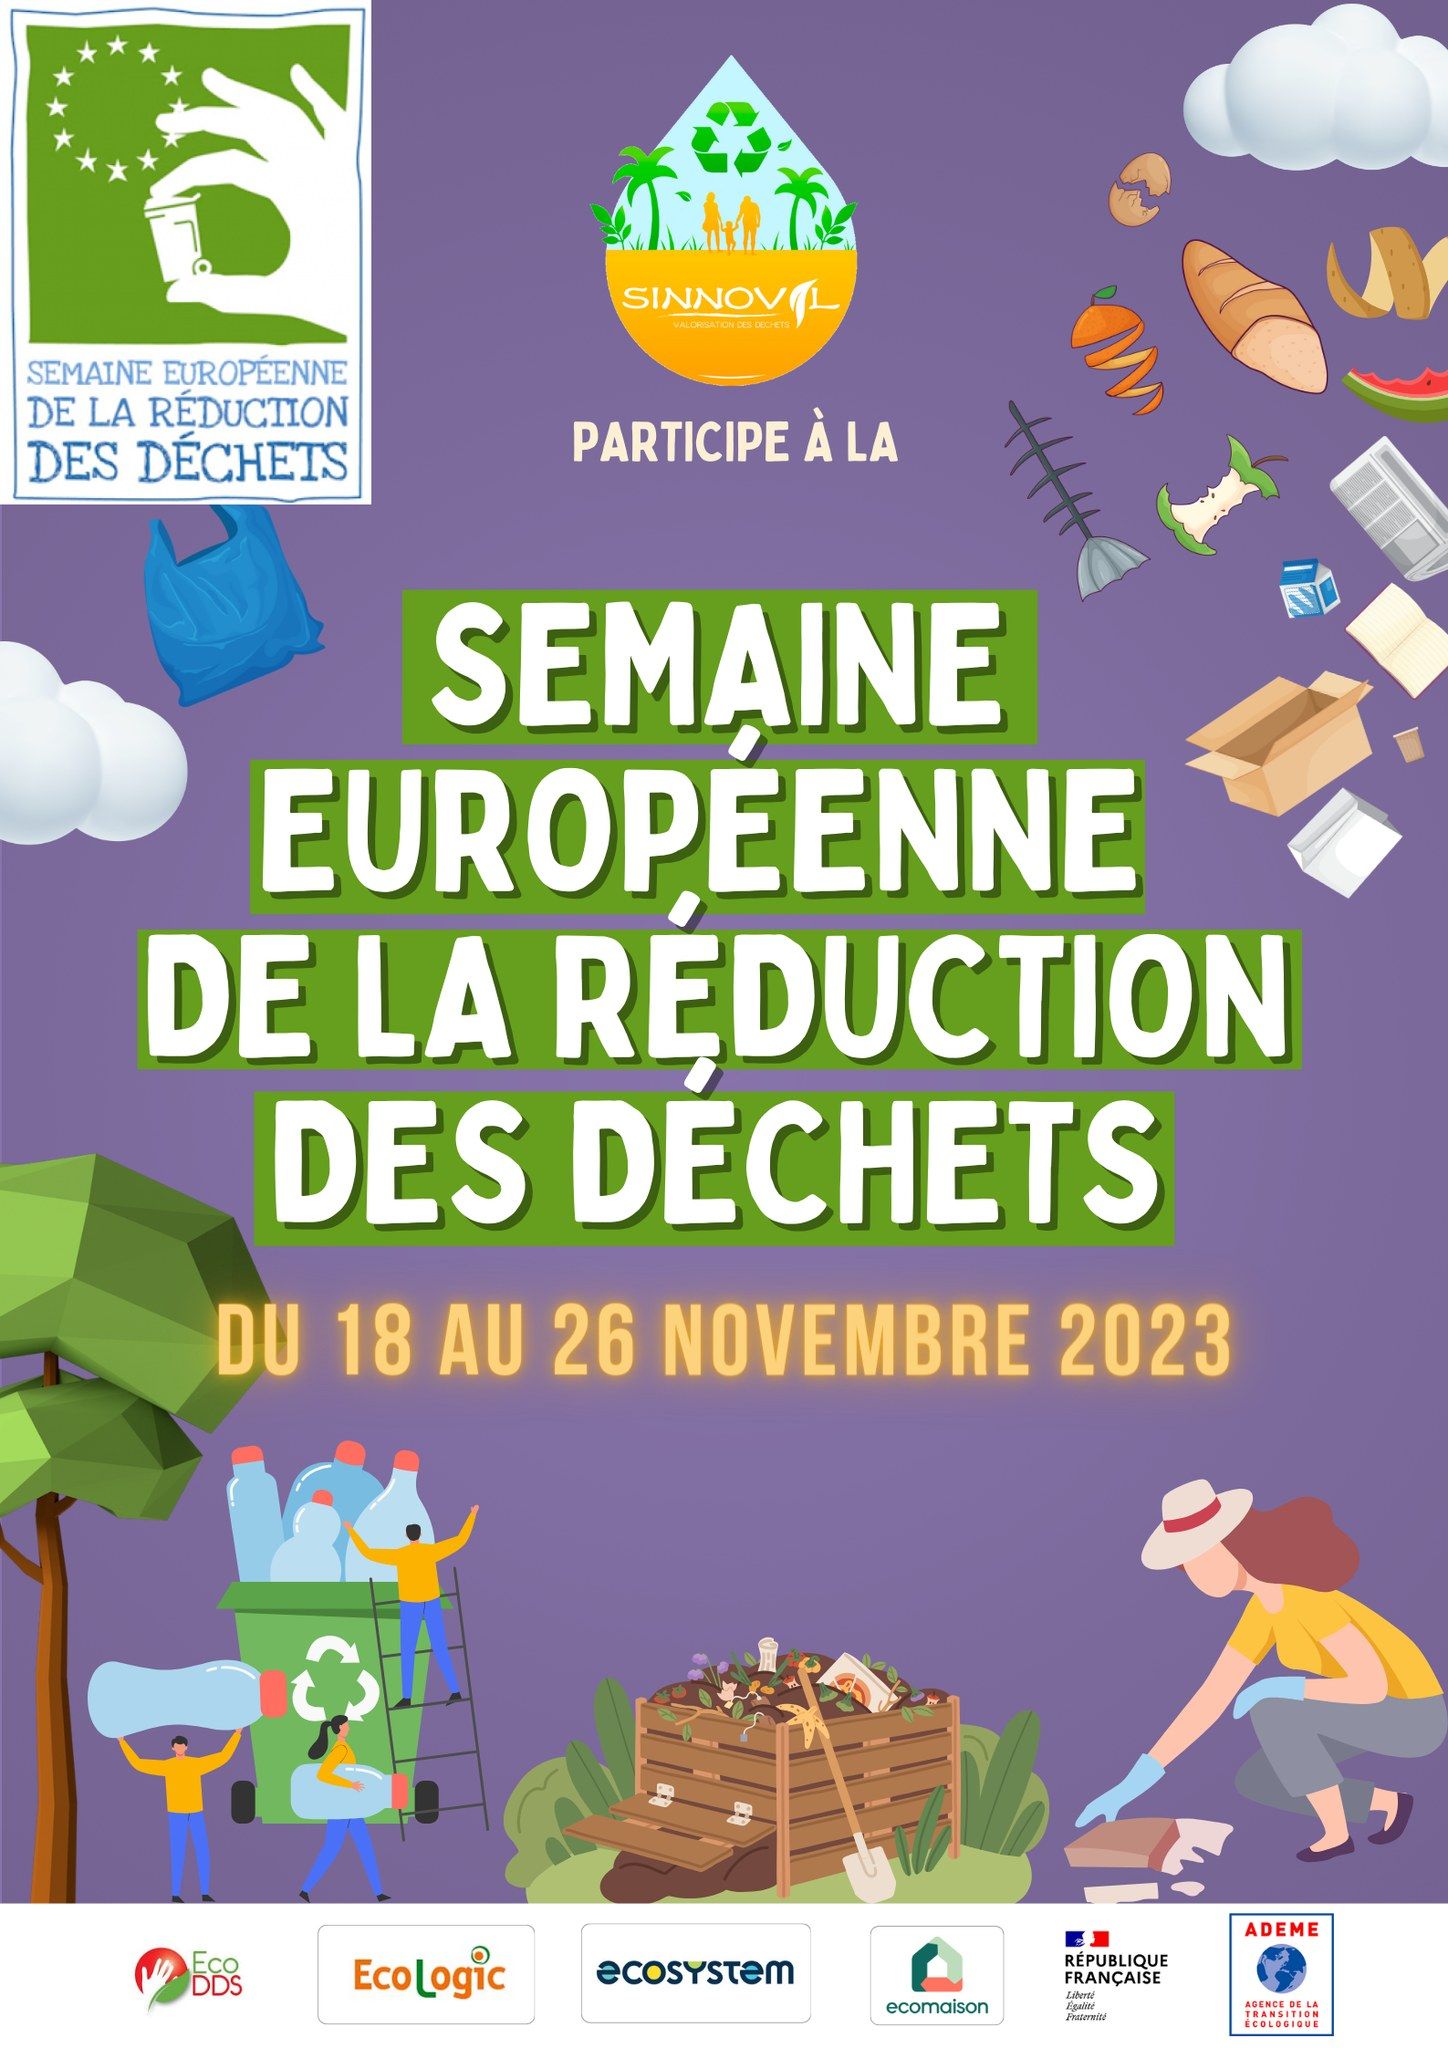 Semaine Européenne de la réduction des déchets